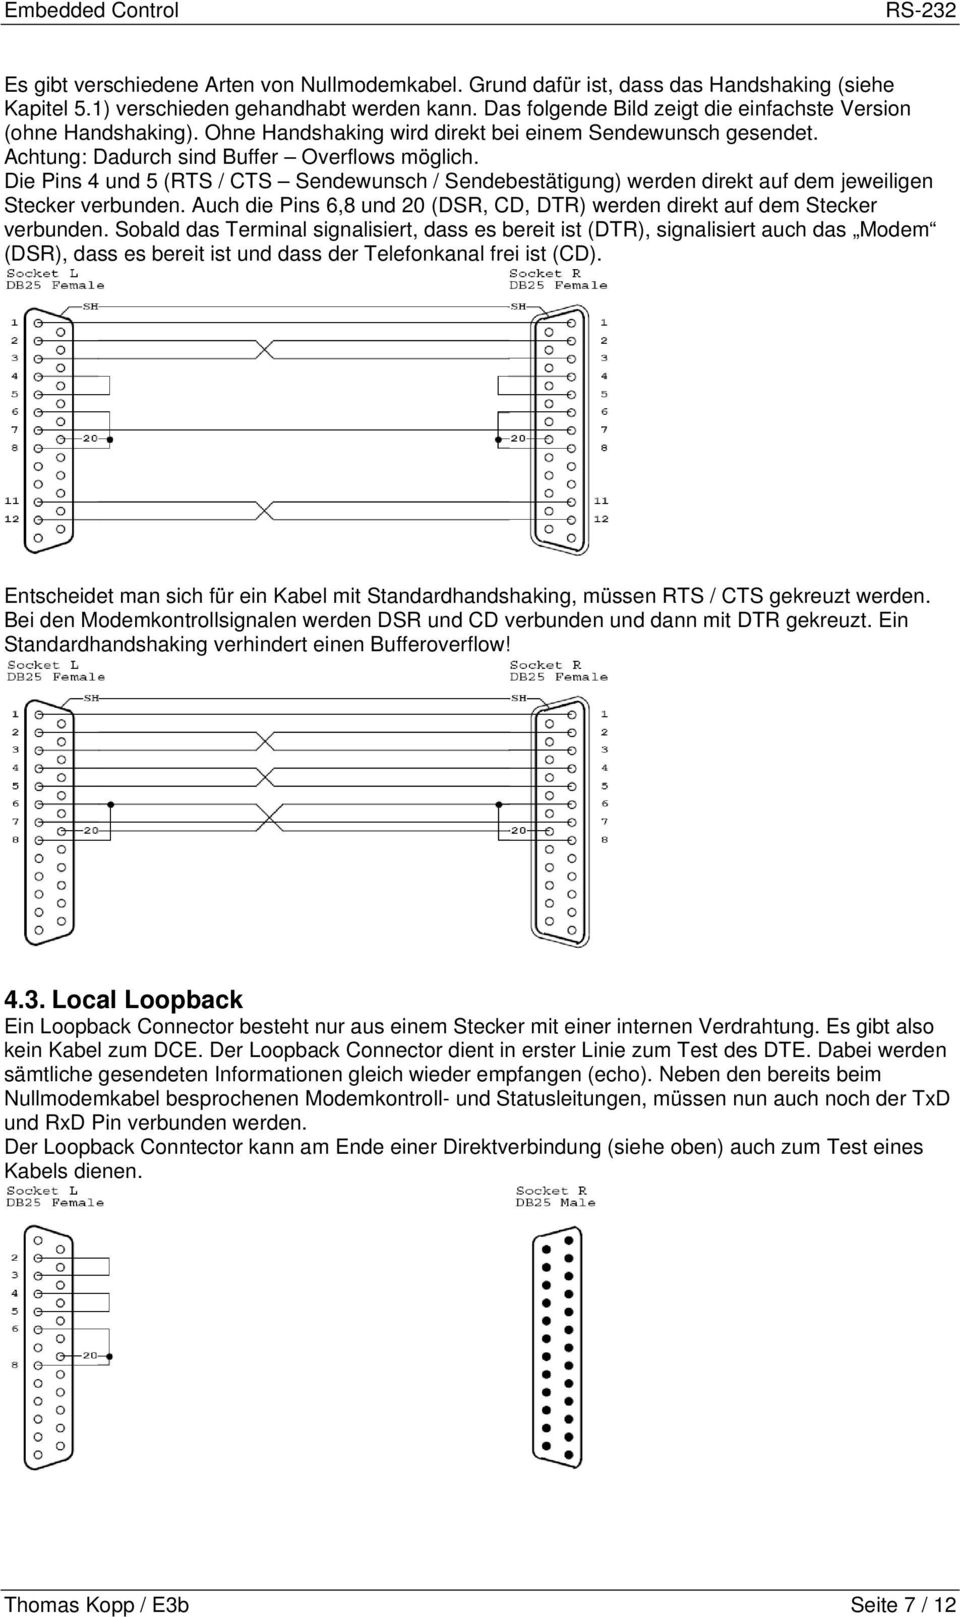 Die Pins 4 und 5 (RTS / CTS Sendewunsch / Sendebestätigung) werden direkt auf dem jeweiligen Stecker verbunden. Auch die Pins 6,8 und 20 (DSR, CD, DTR) werden direkt auf dem Stecker verbunden.